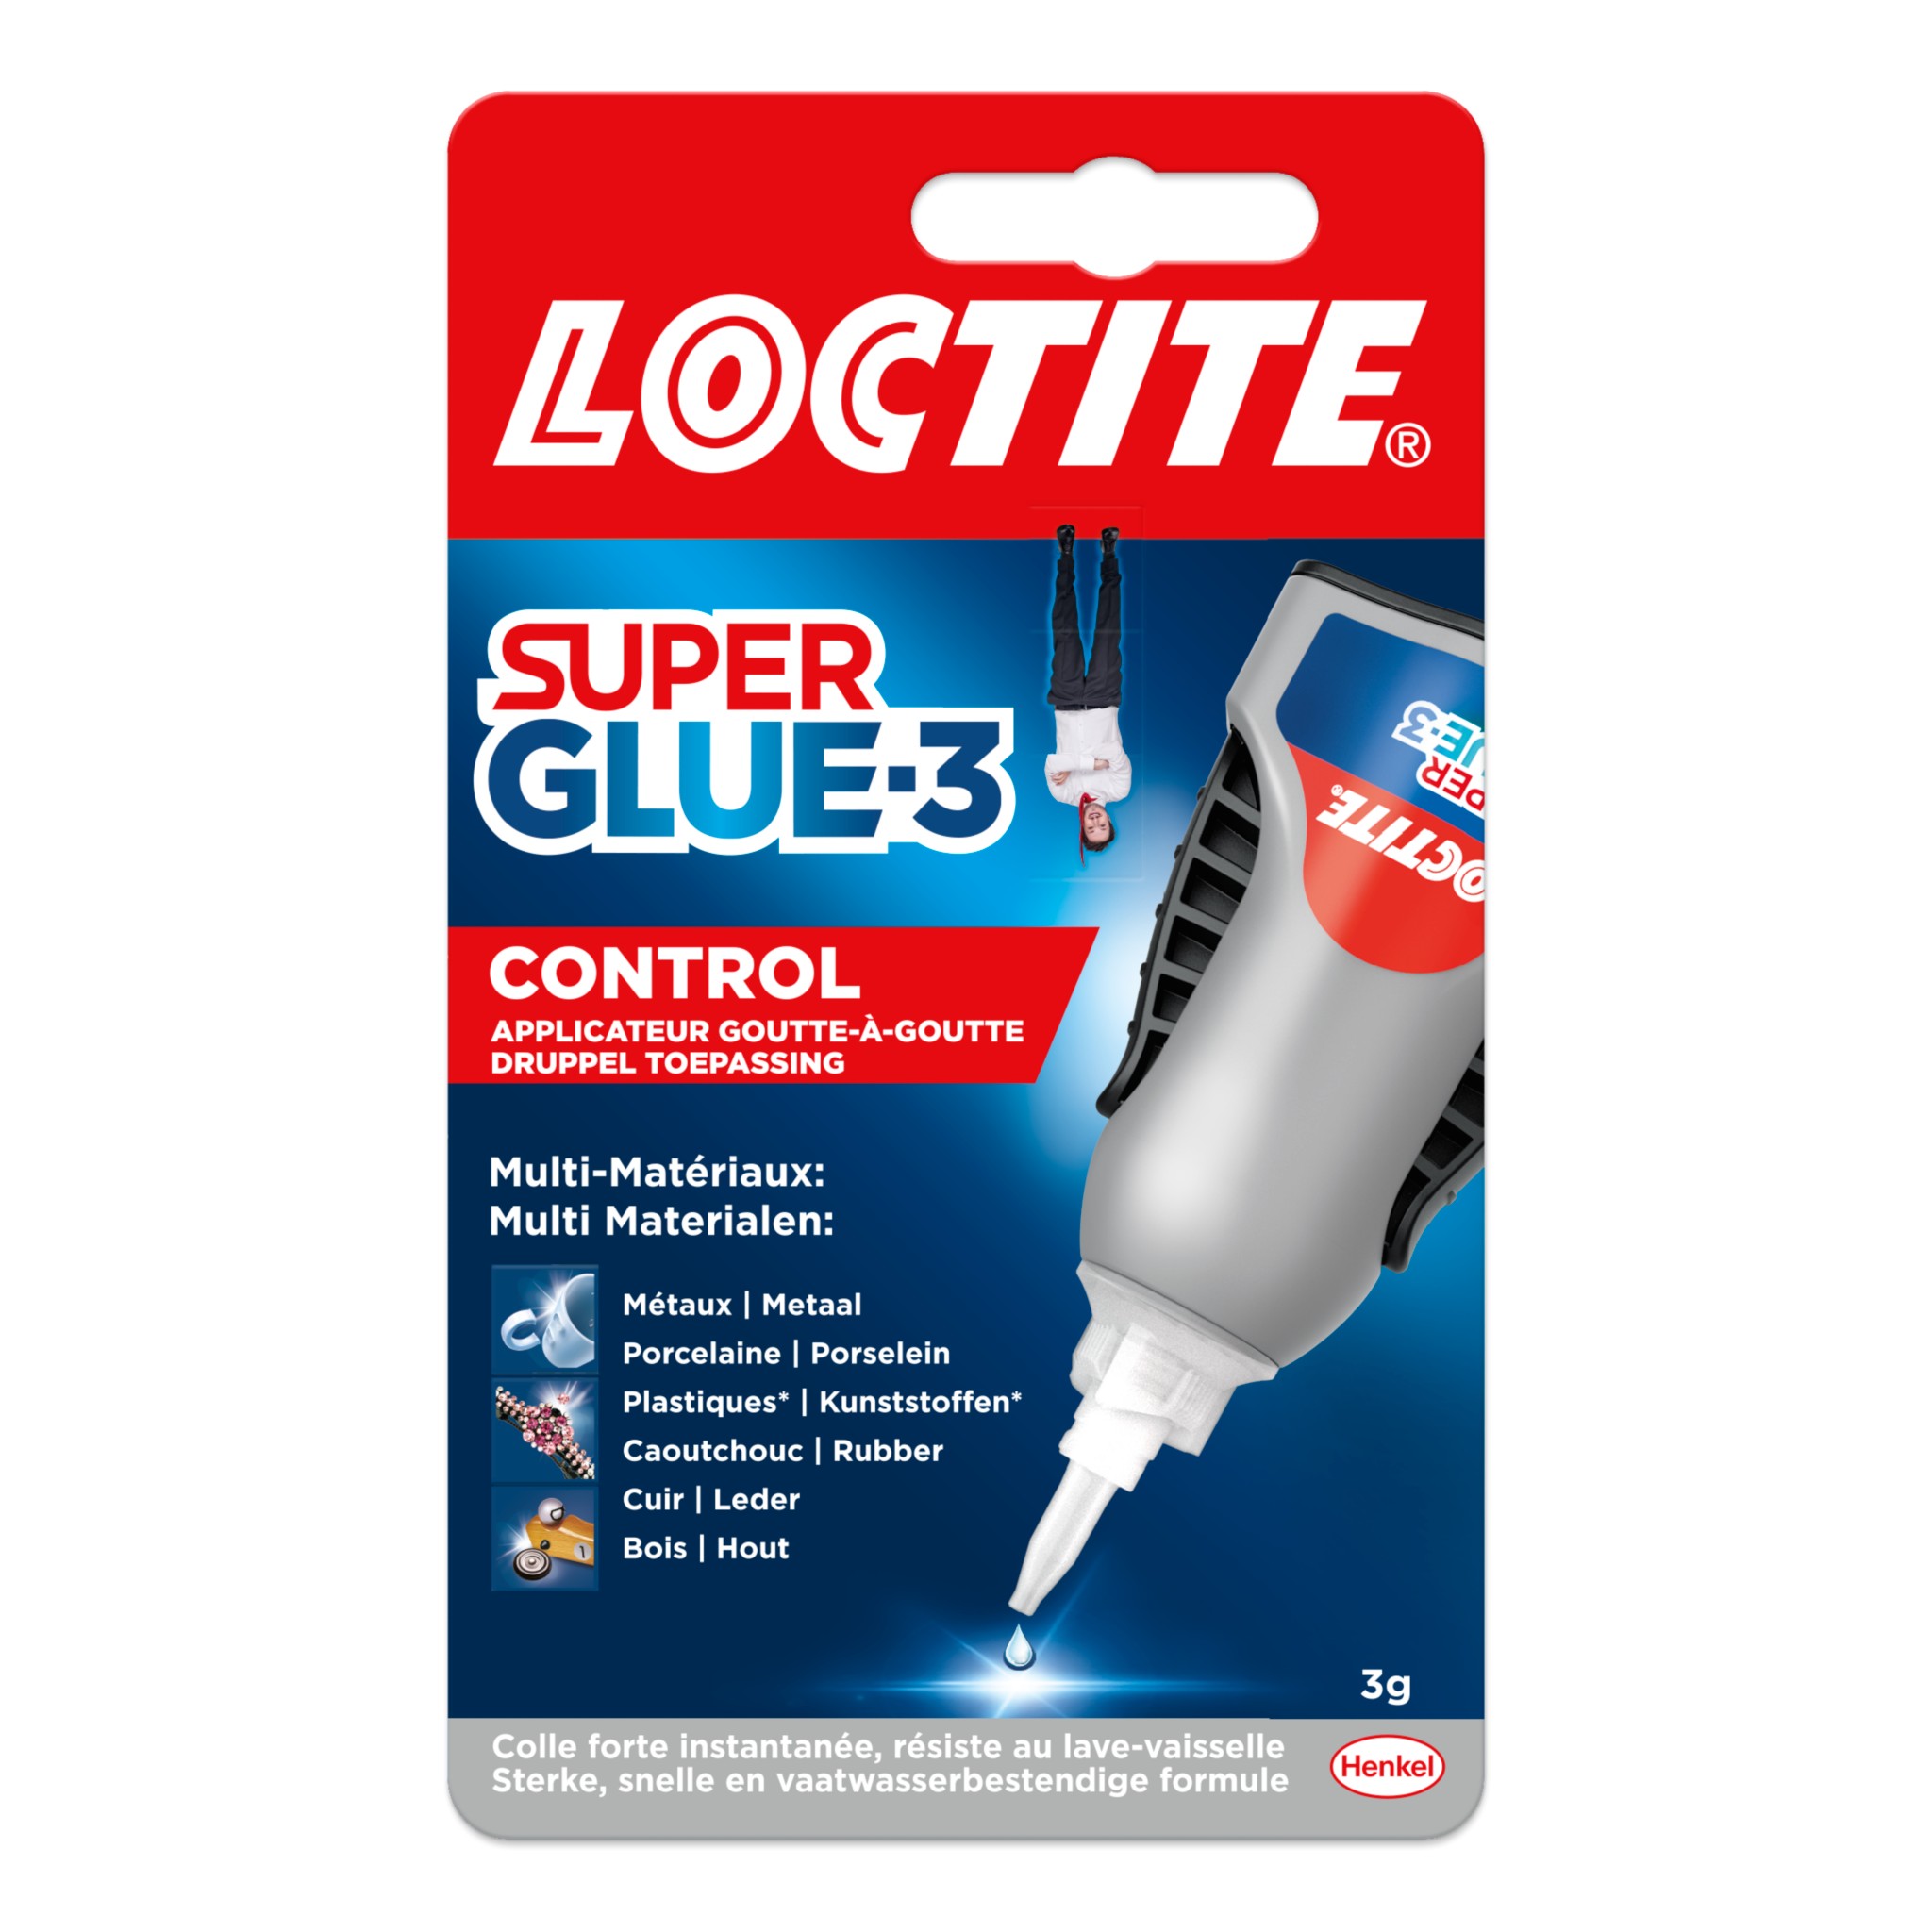 Glue3 Liquid Control